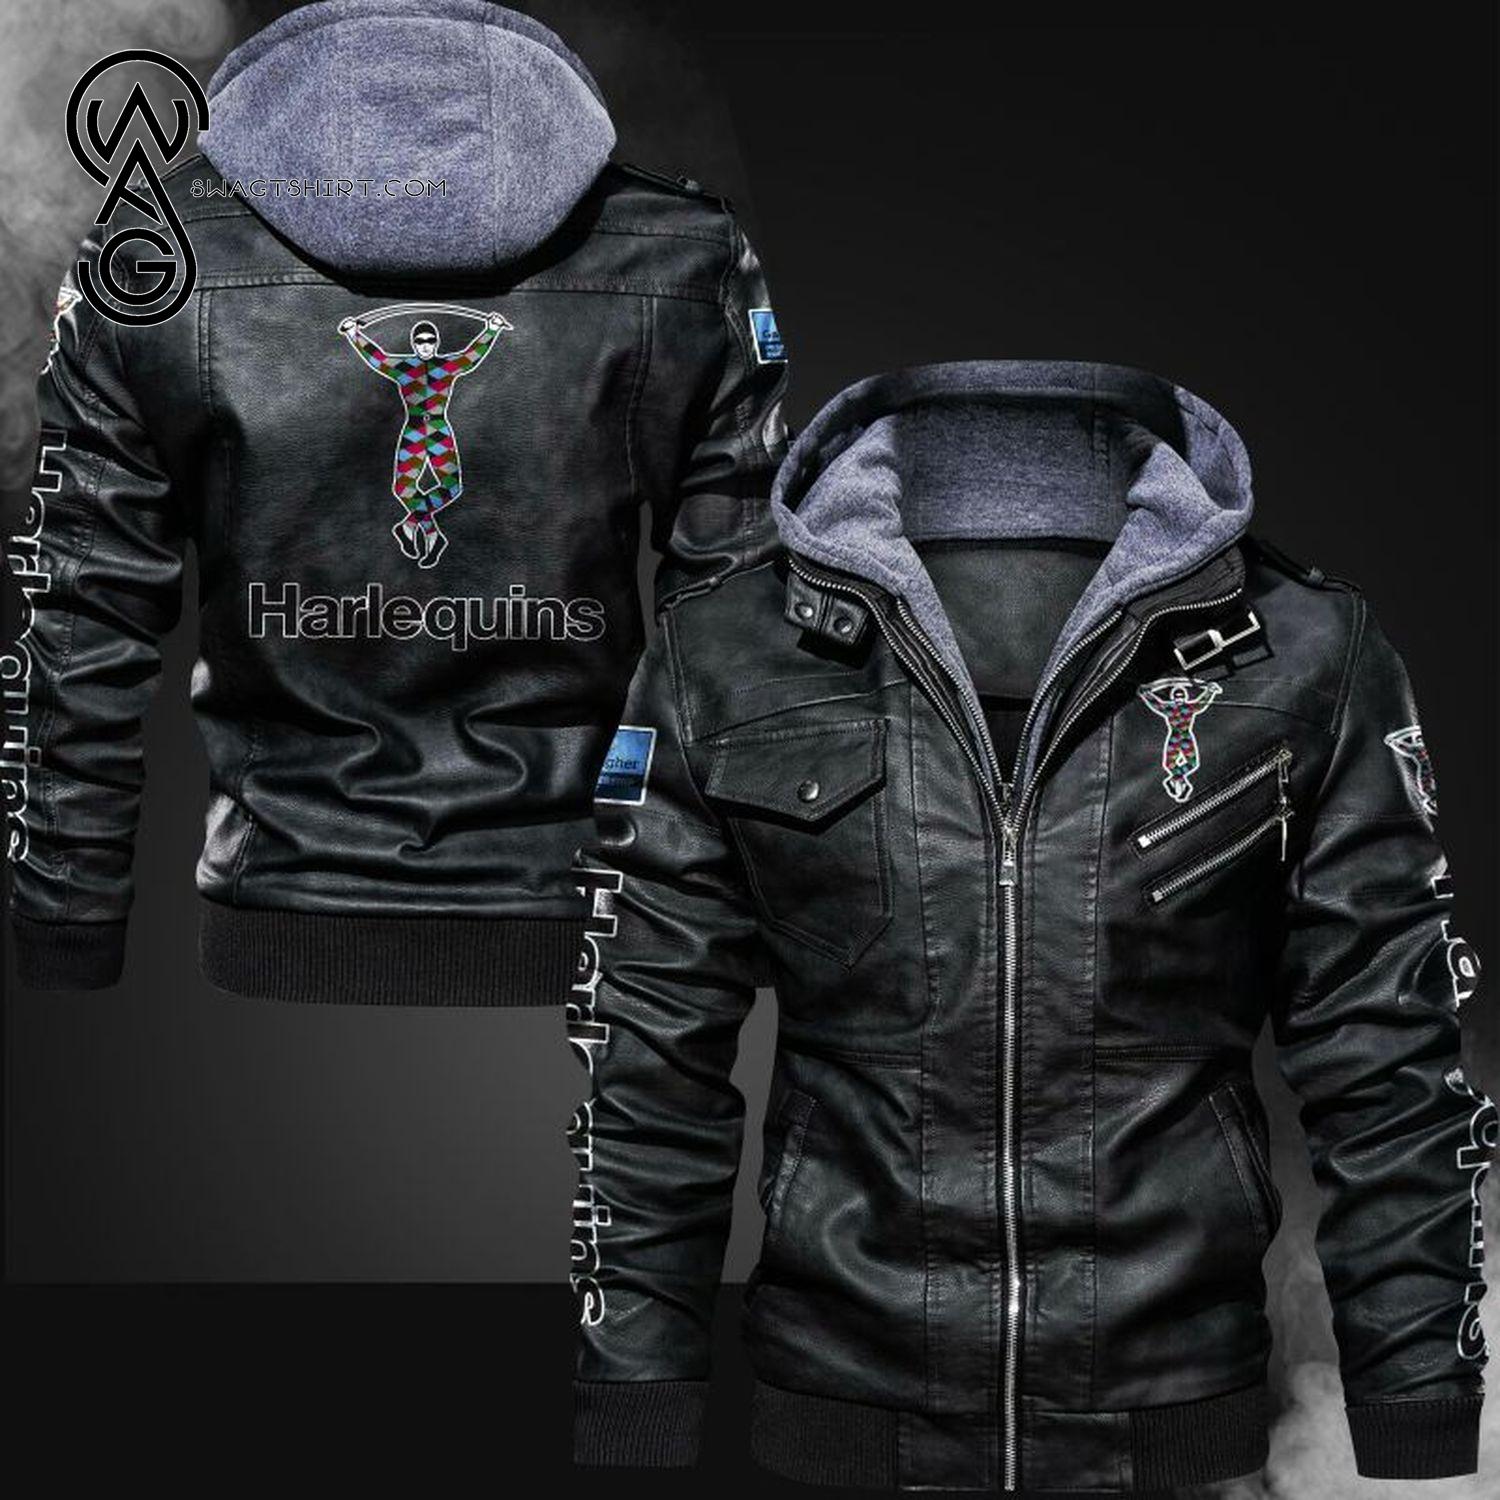 Harlequins Football Club Leather Jacket